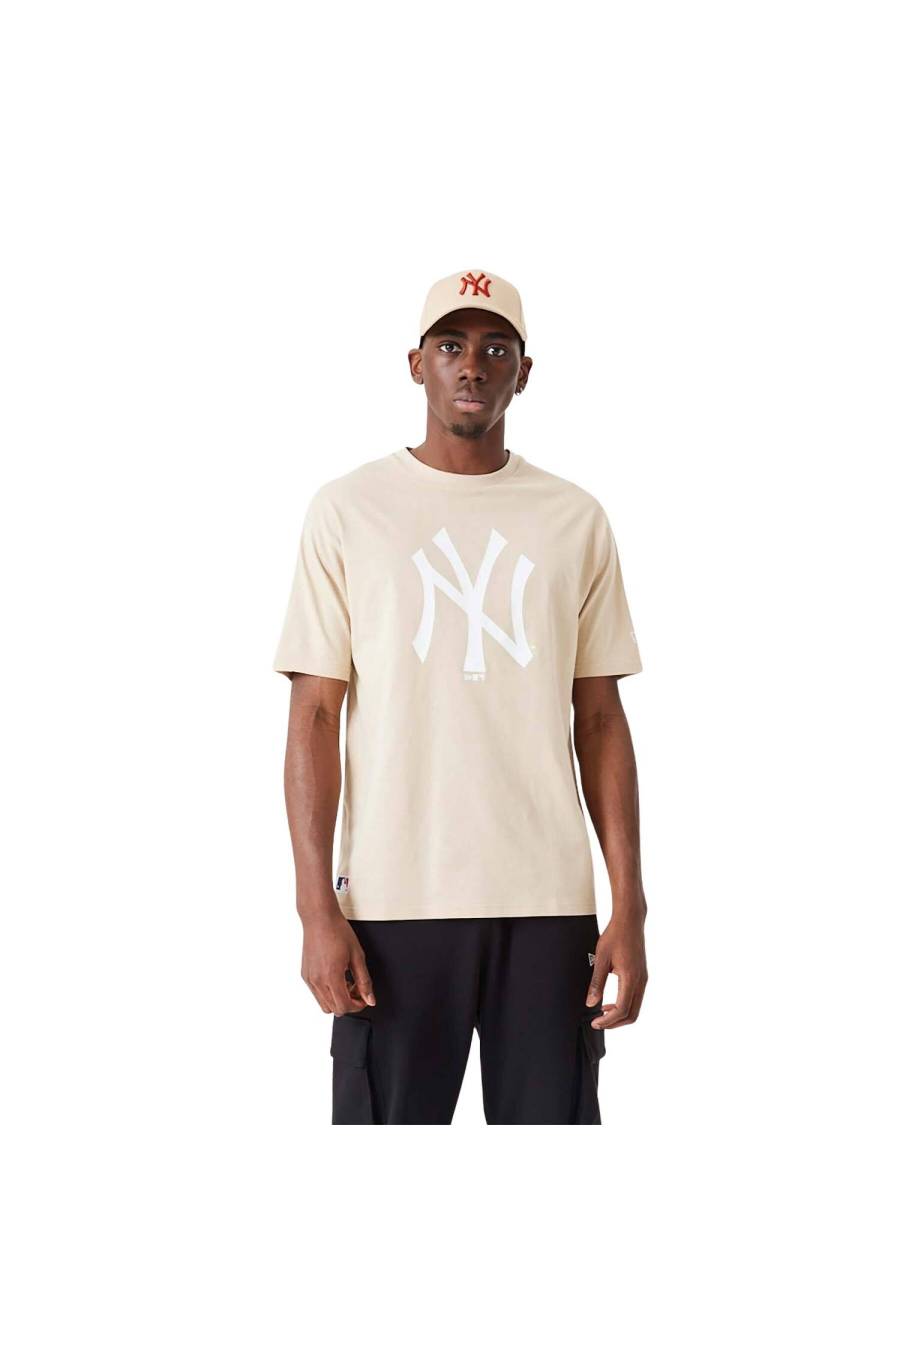 Camiseta New Era New York Yankees MLB League Oversized 60332281